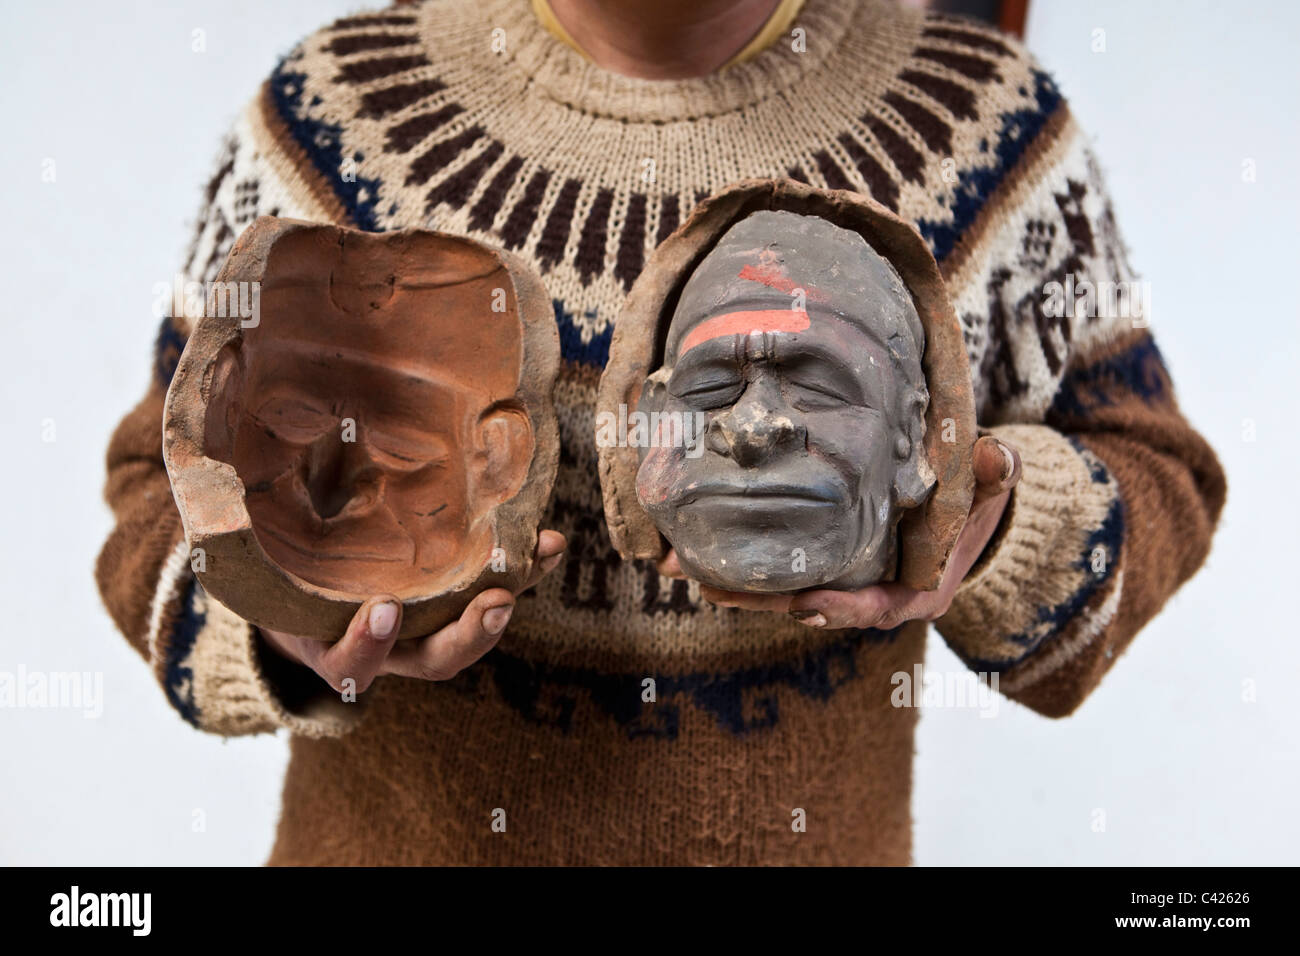 Peru, Trujillo, Nachbau von Schimmel aus der Moche-Kultur, etwa zwischen 200 und 850 n. Chr. zeigt Porträt des Menschen Kauen von Coca-Blättern Stockfoto